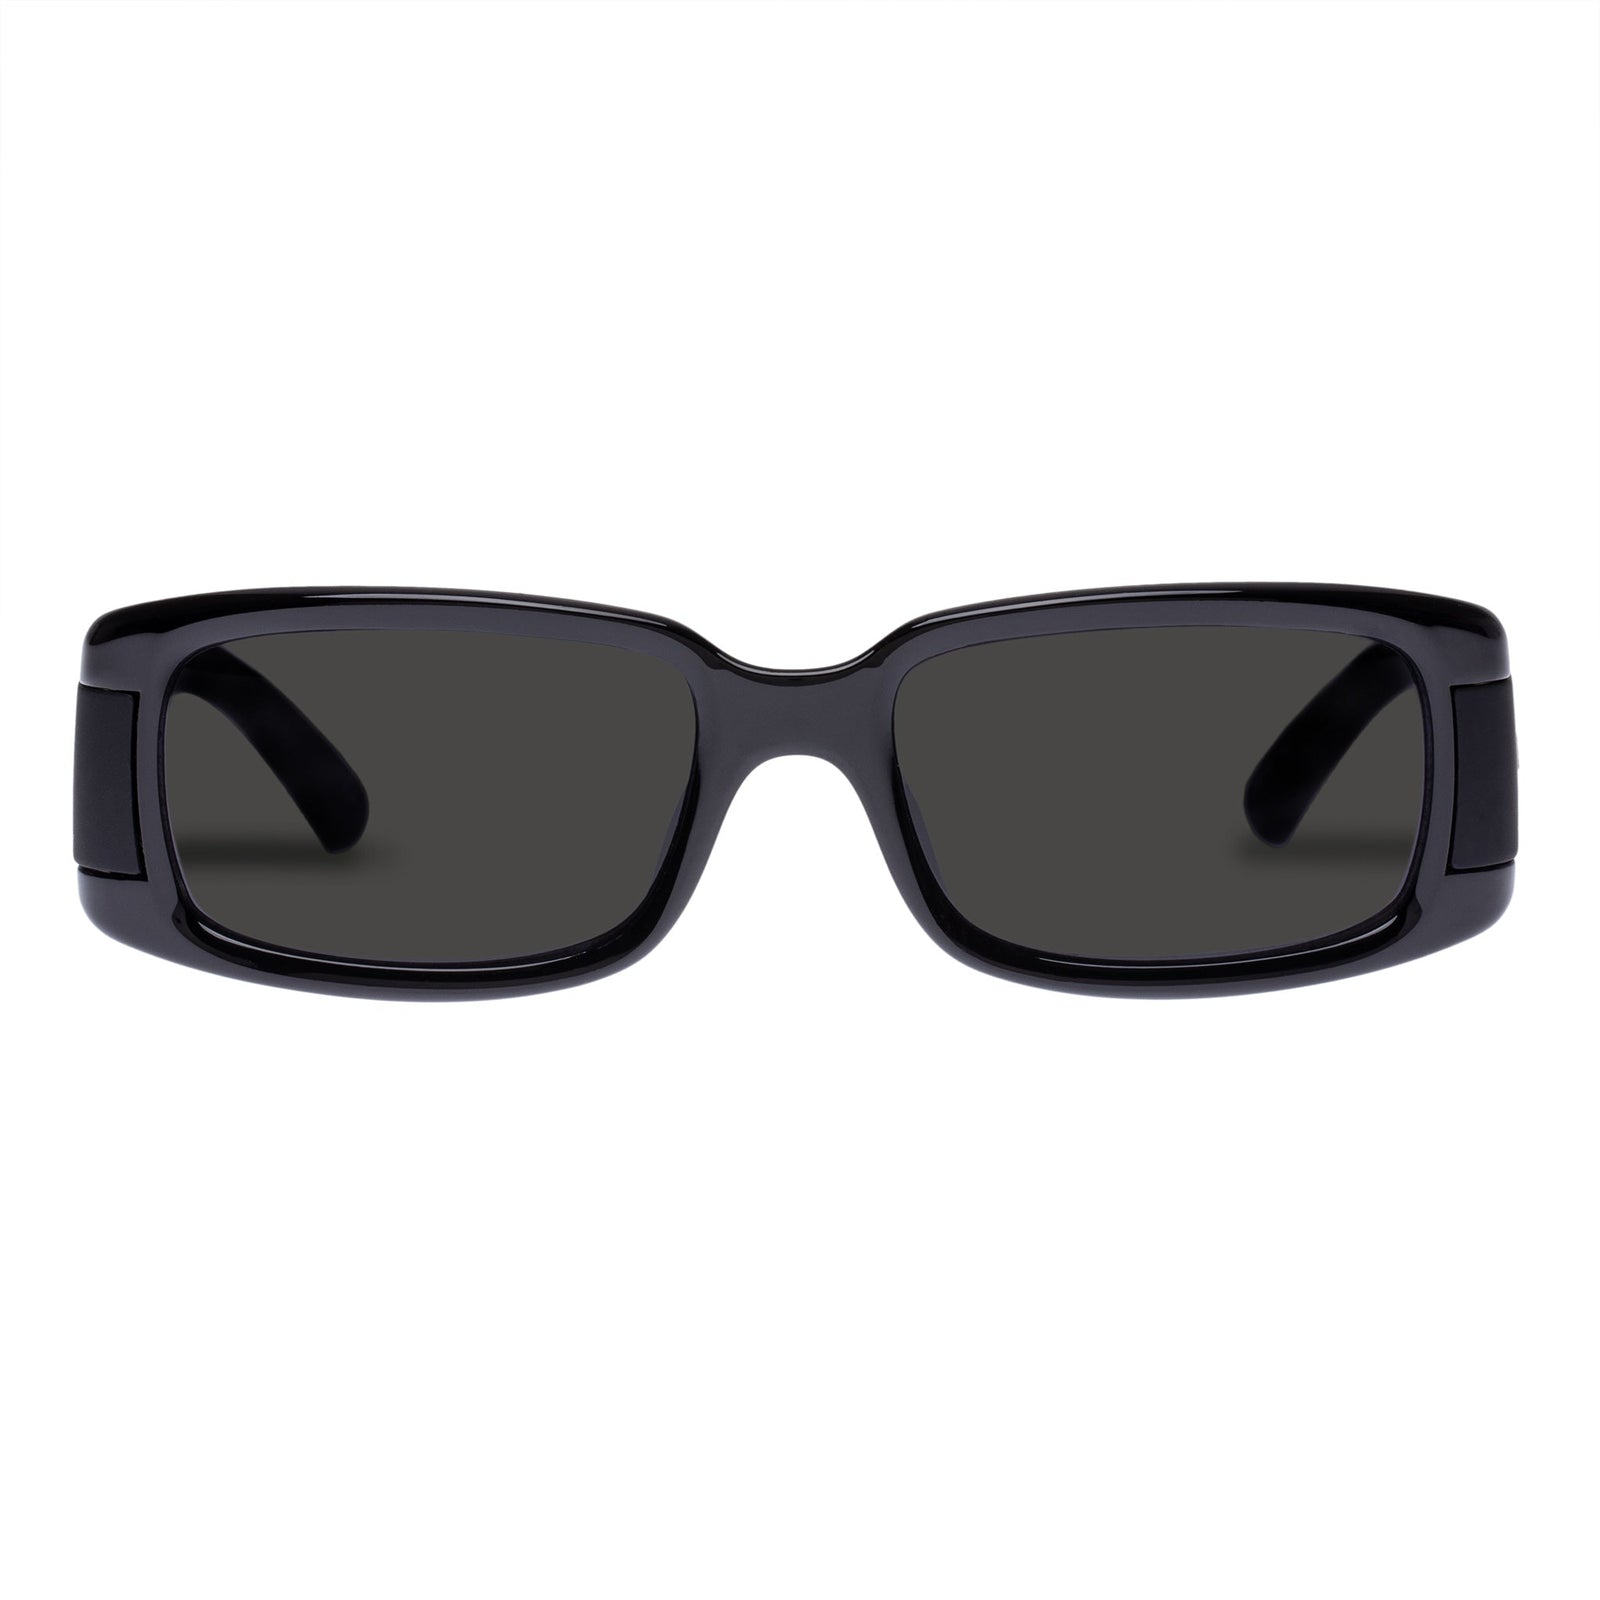 Women's Black Slim Rectangular Frame Sunglasses